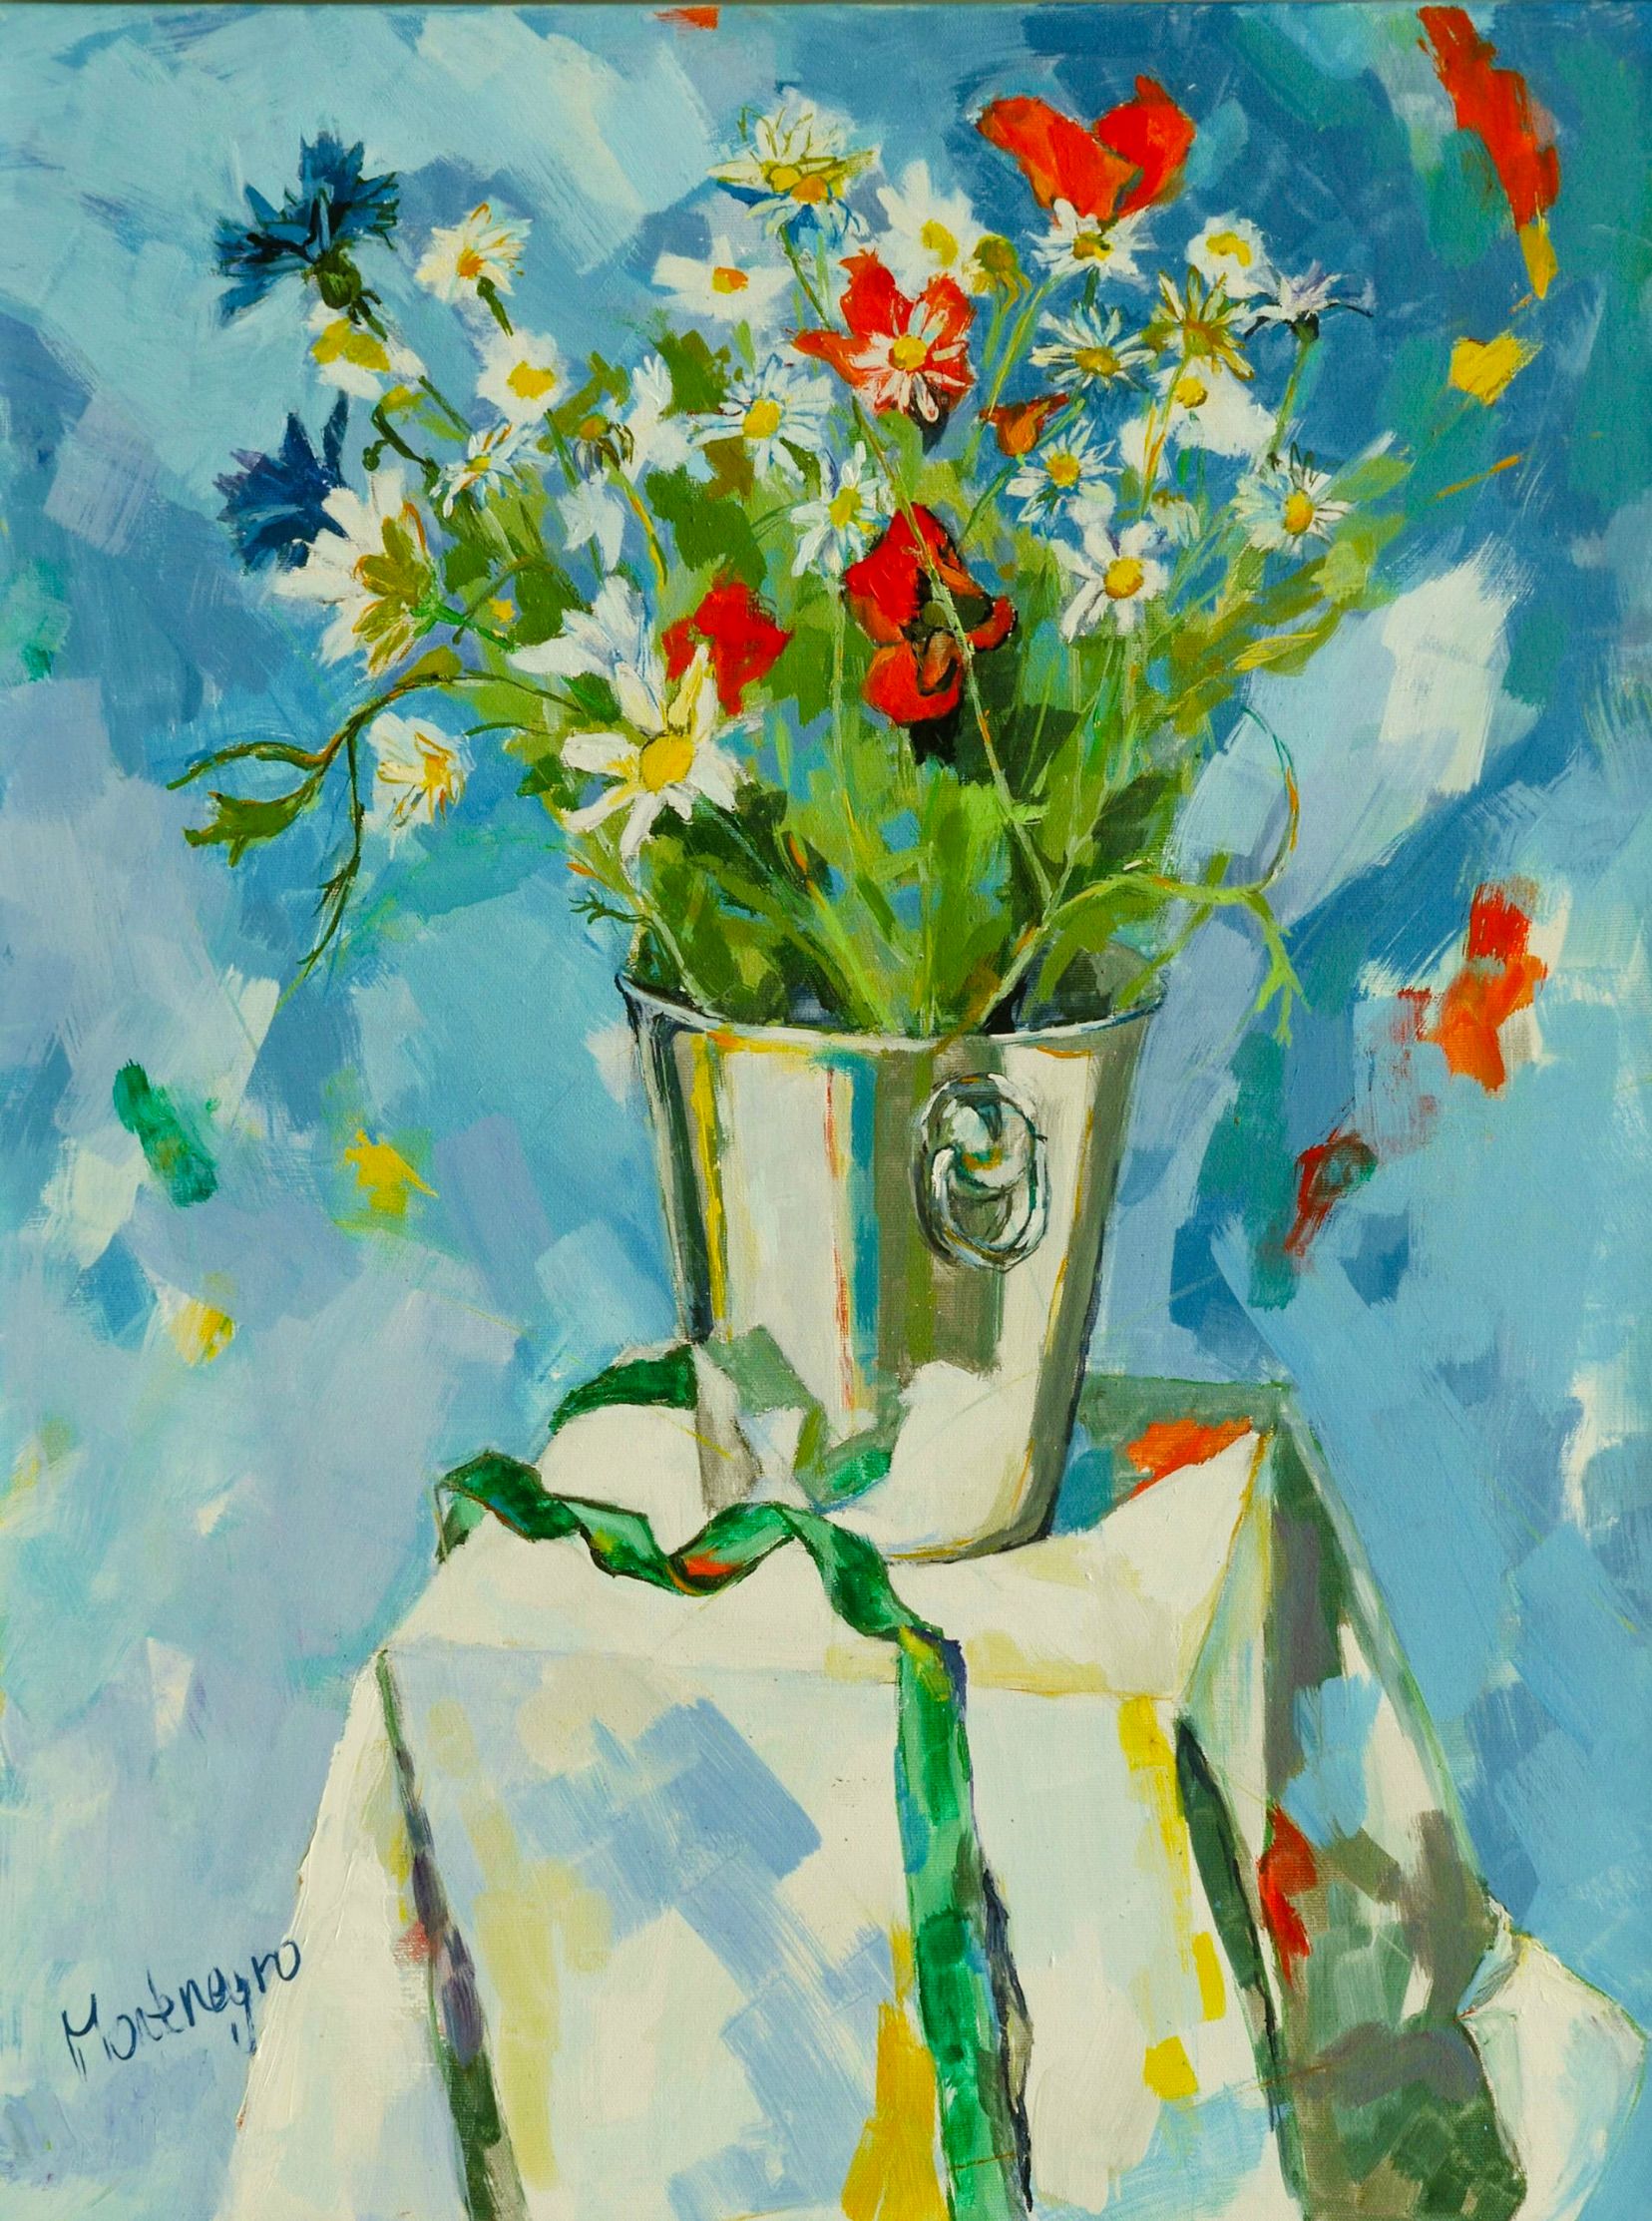 米里亚姆-黑山的表现主义绘画 桌上的银色水桶中的彩色花朵